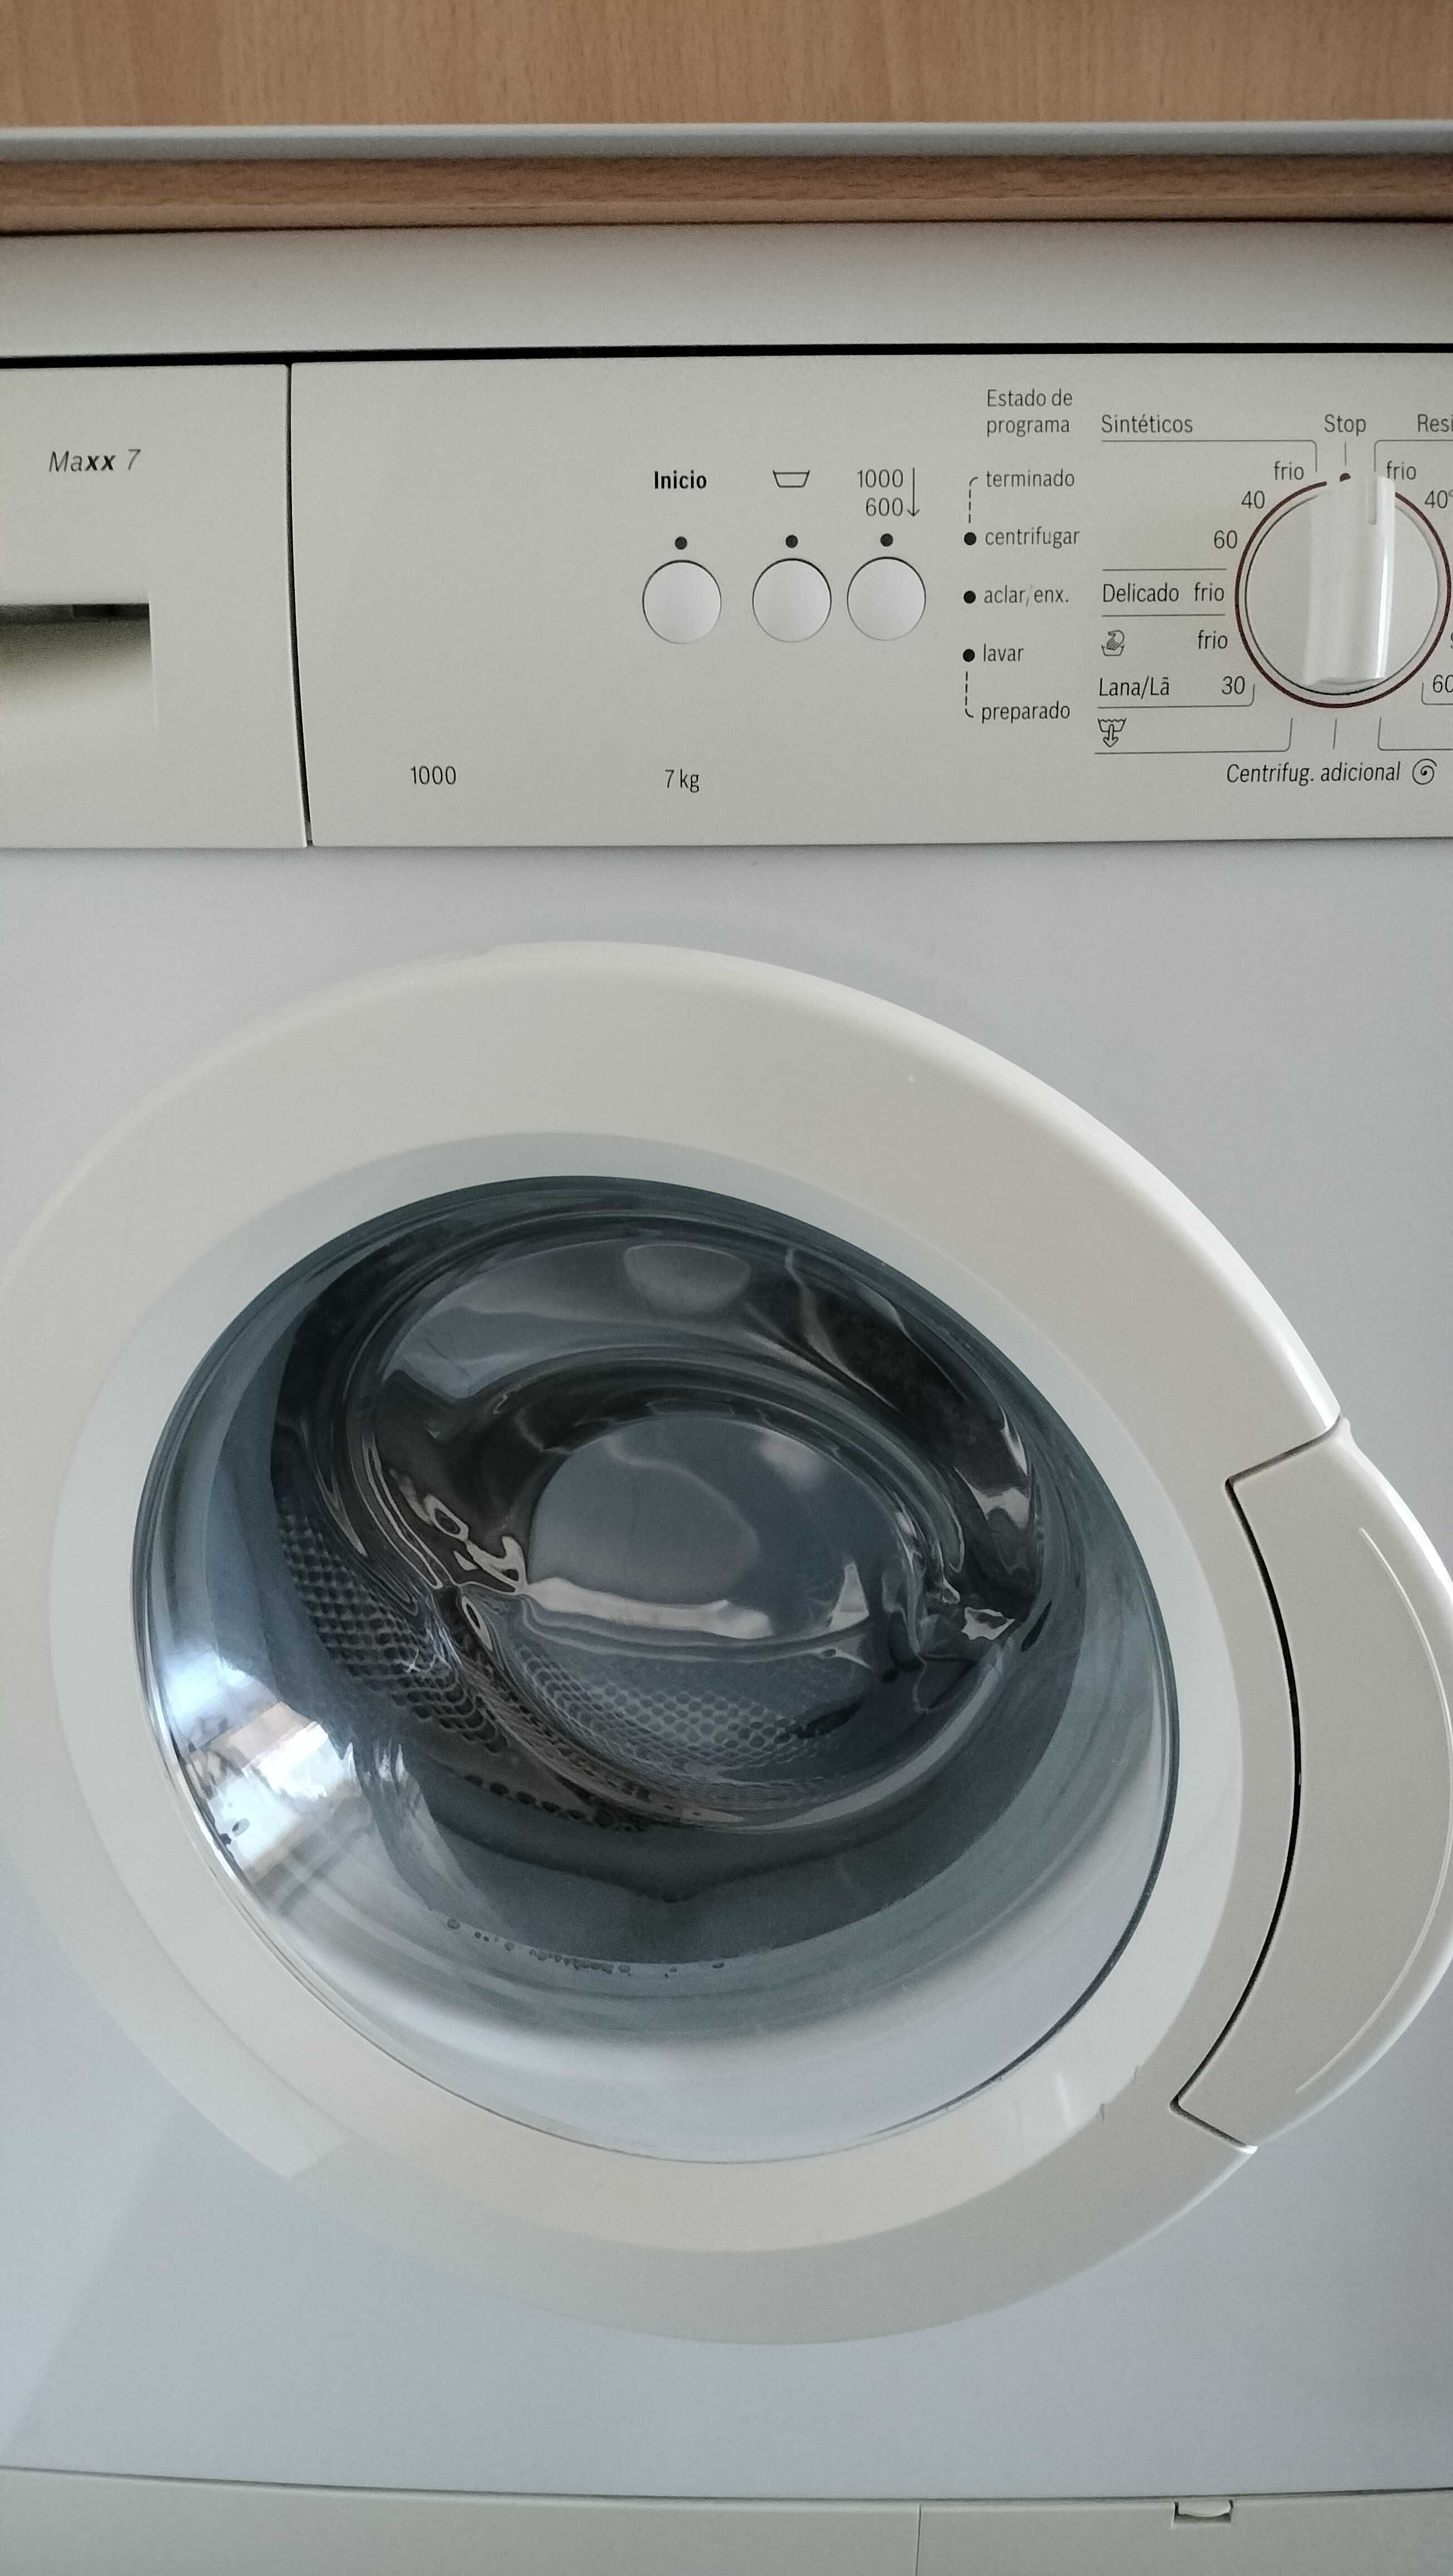 Vendo maquina de lavar bosch